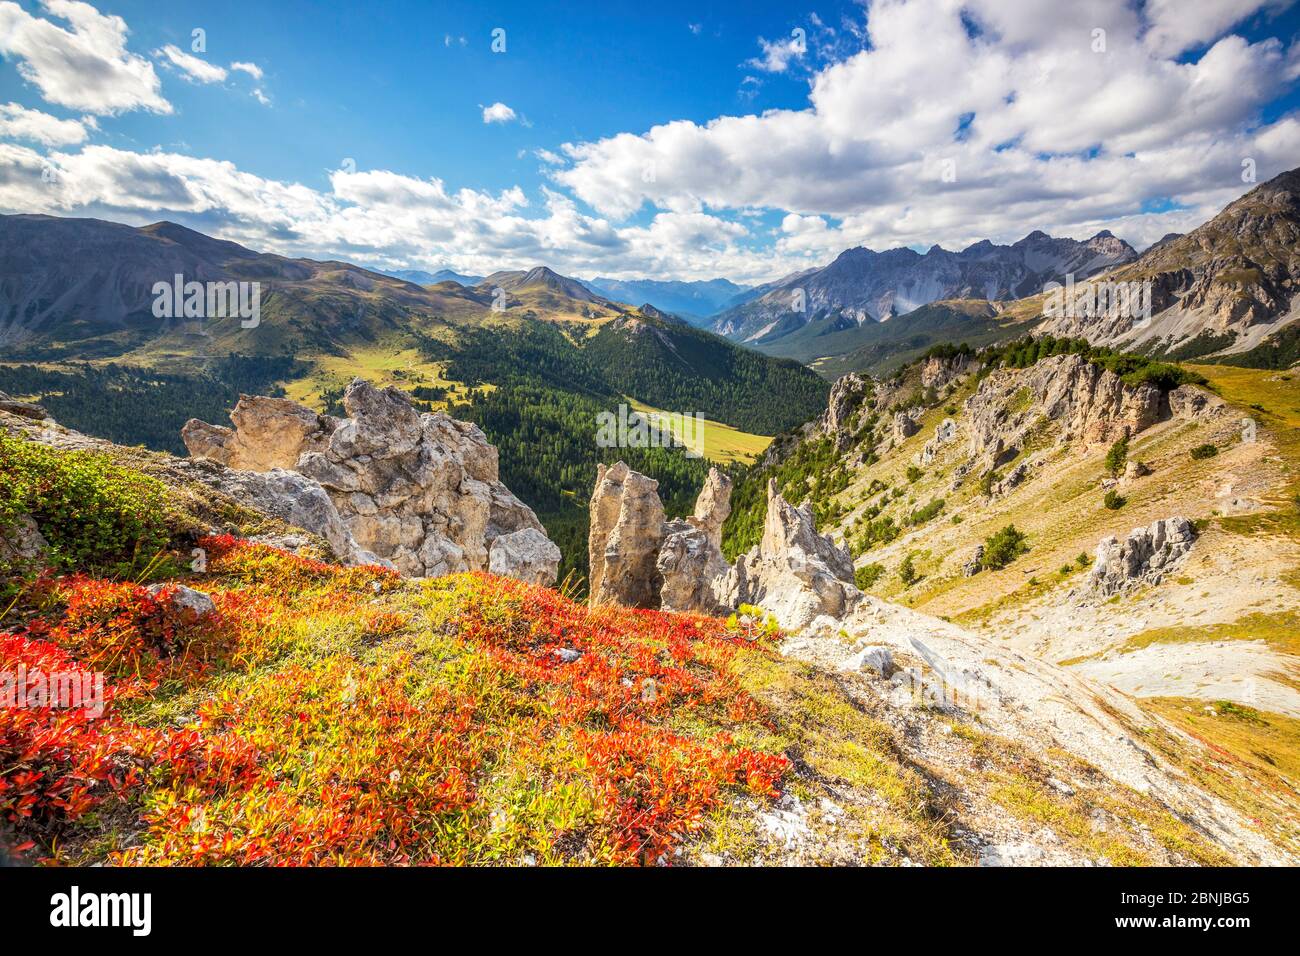 Heidelbeerblätter im Herbst in der Nähe von Felsentürmen im Schweizer Nationalpark, Fuornpass, Engadiner Tal, Graubünden, Schweiz, Europa Stockfoto